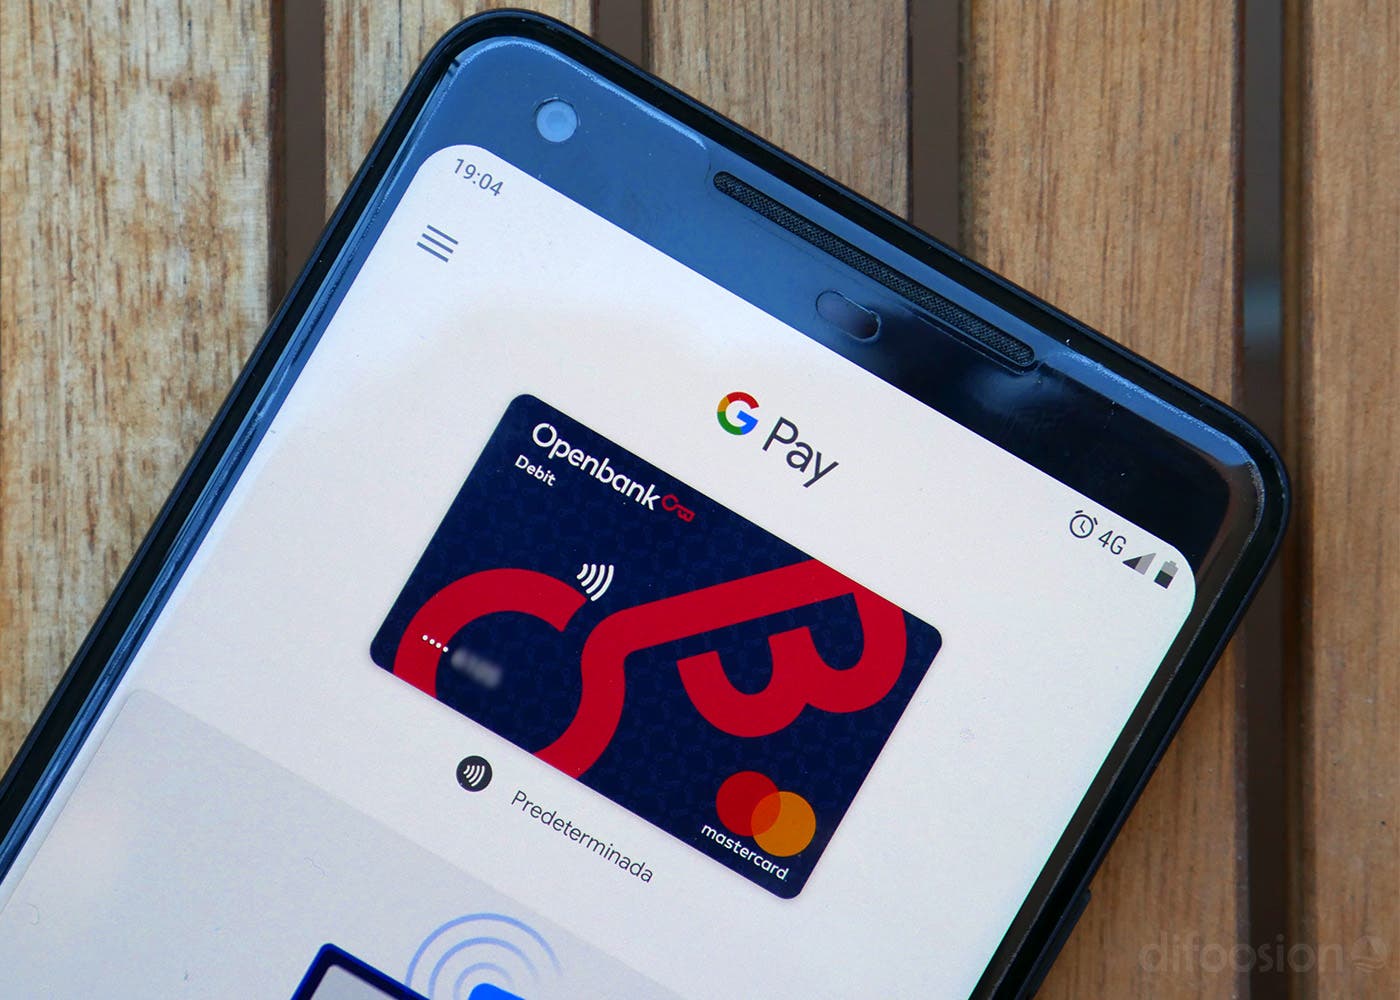 Google Pay lanzará cuentas bancarias digitales en 2021